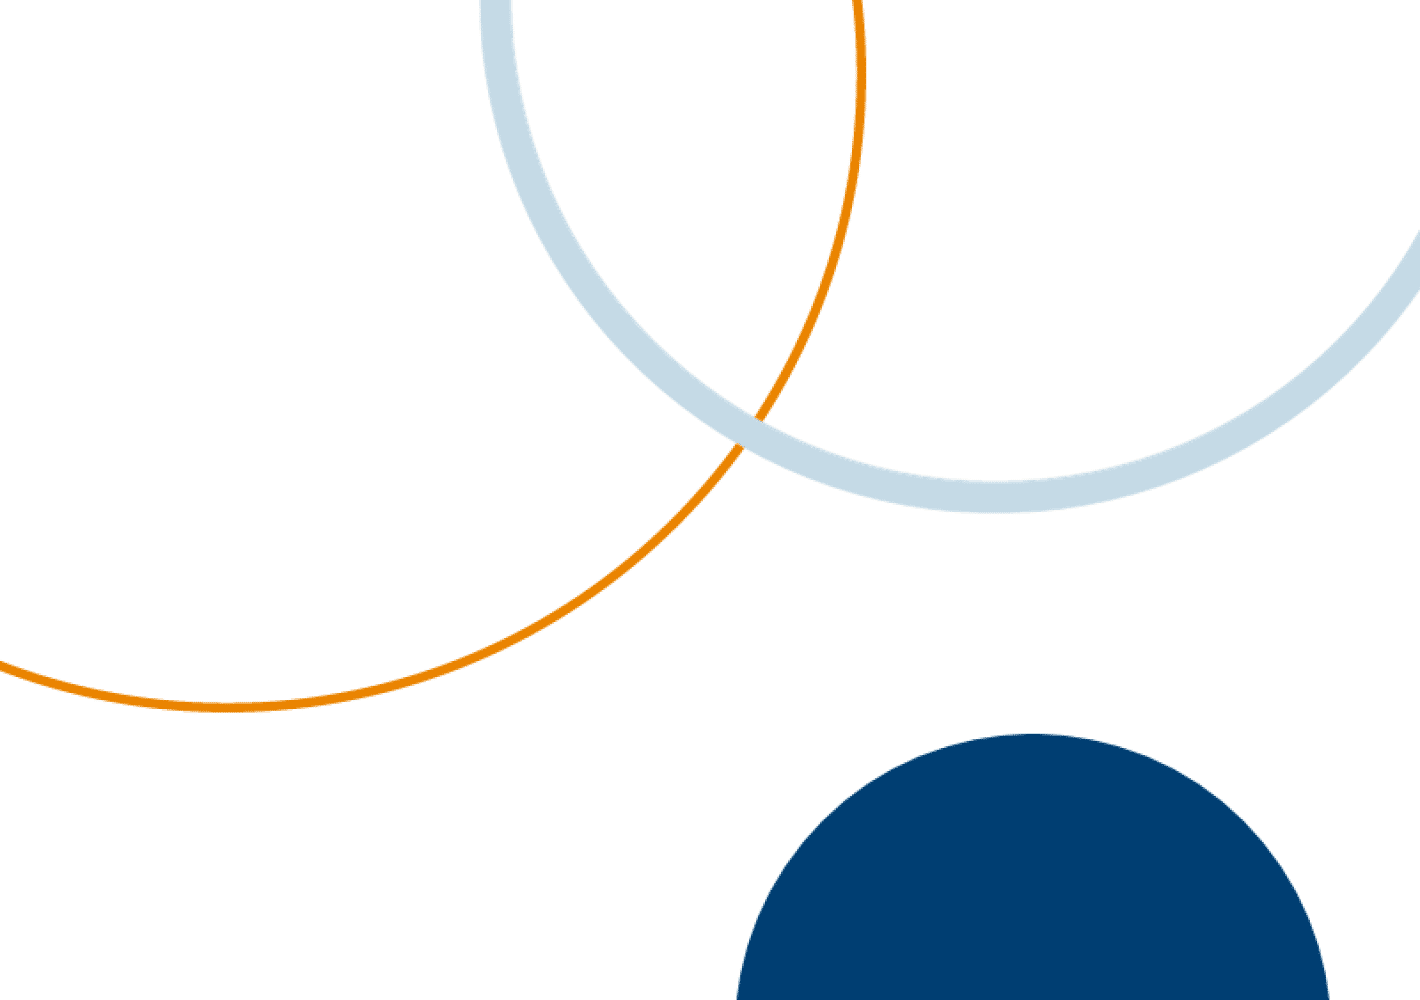 Na białym tle granatowy półokrąg oraz jasnoniebieska i pomarańczowa półokrągłe linie.